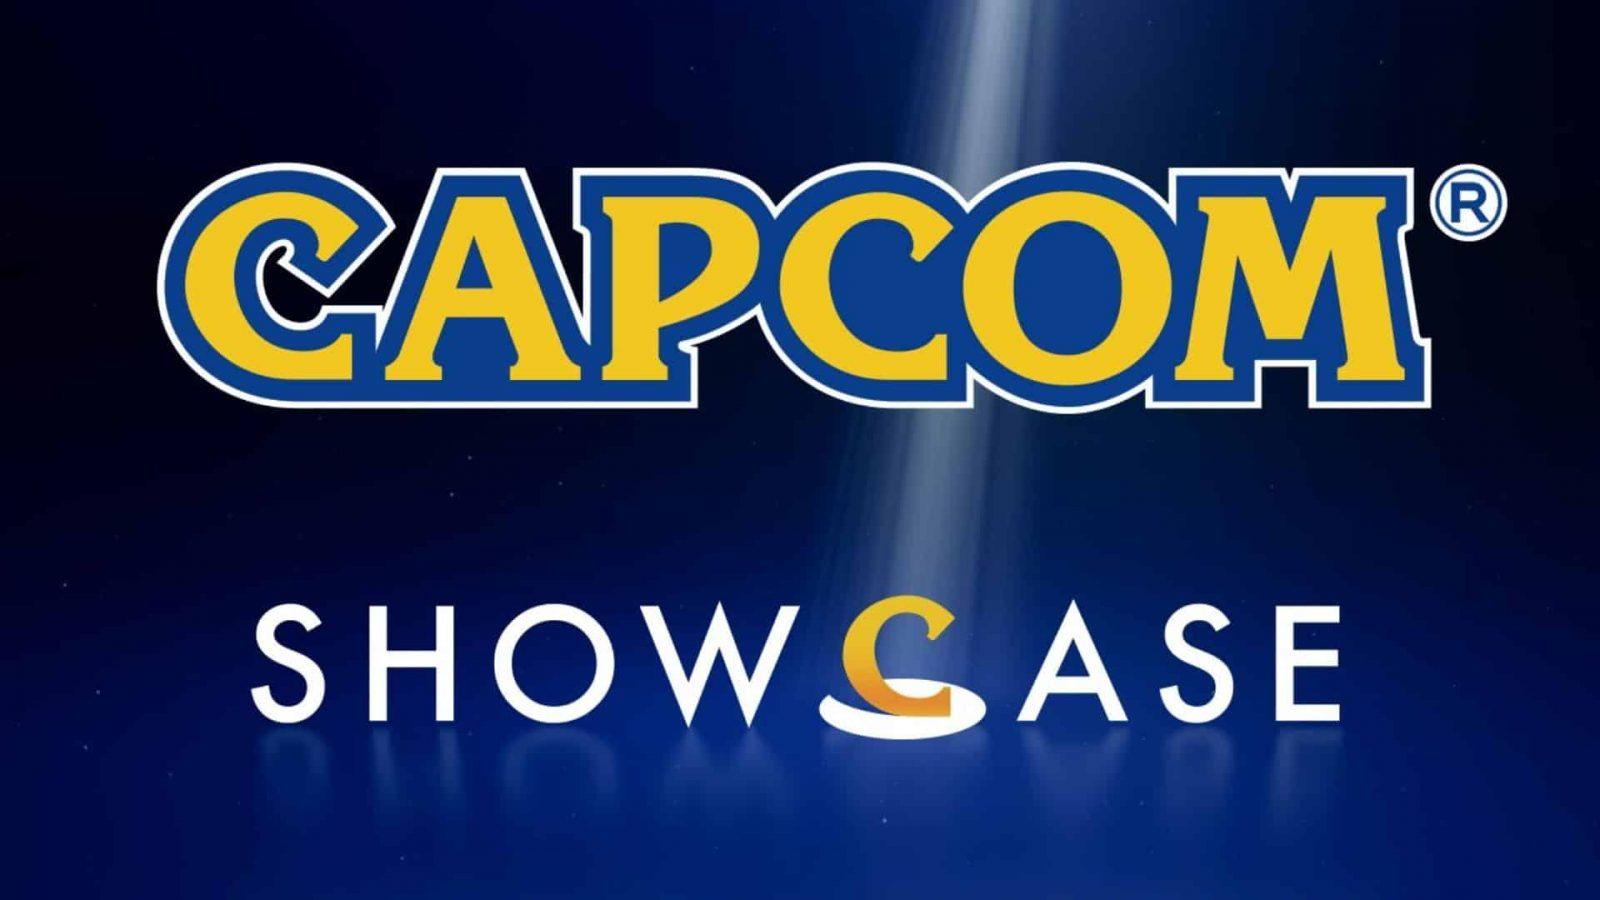 capcom showcase logo 2022